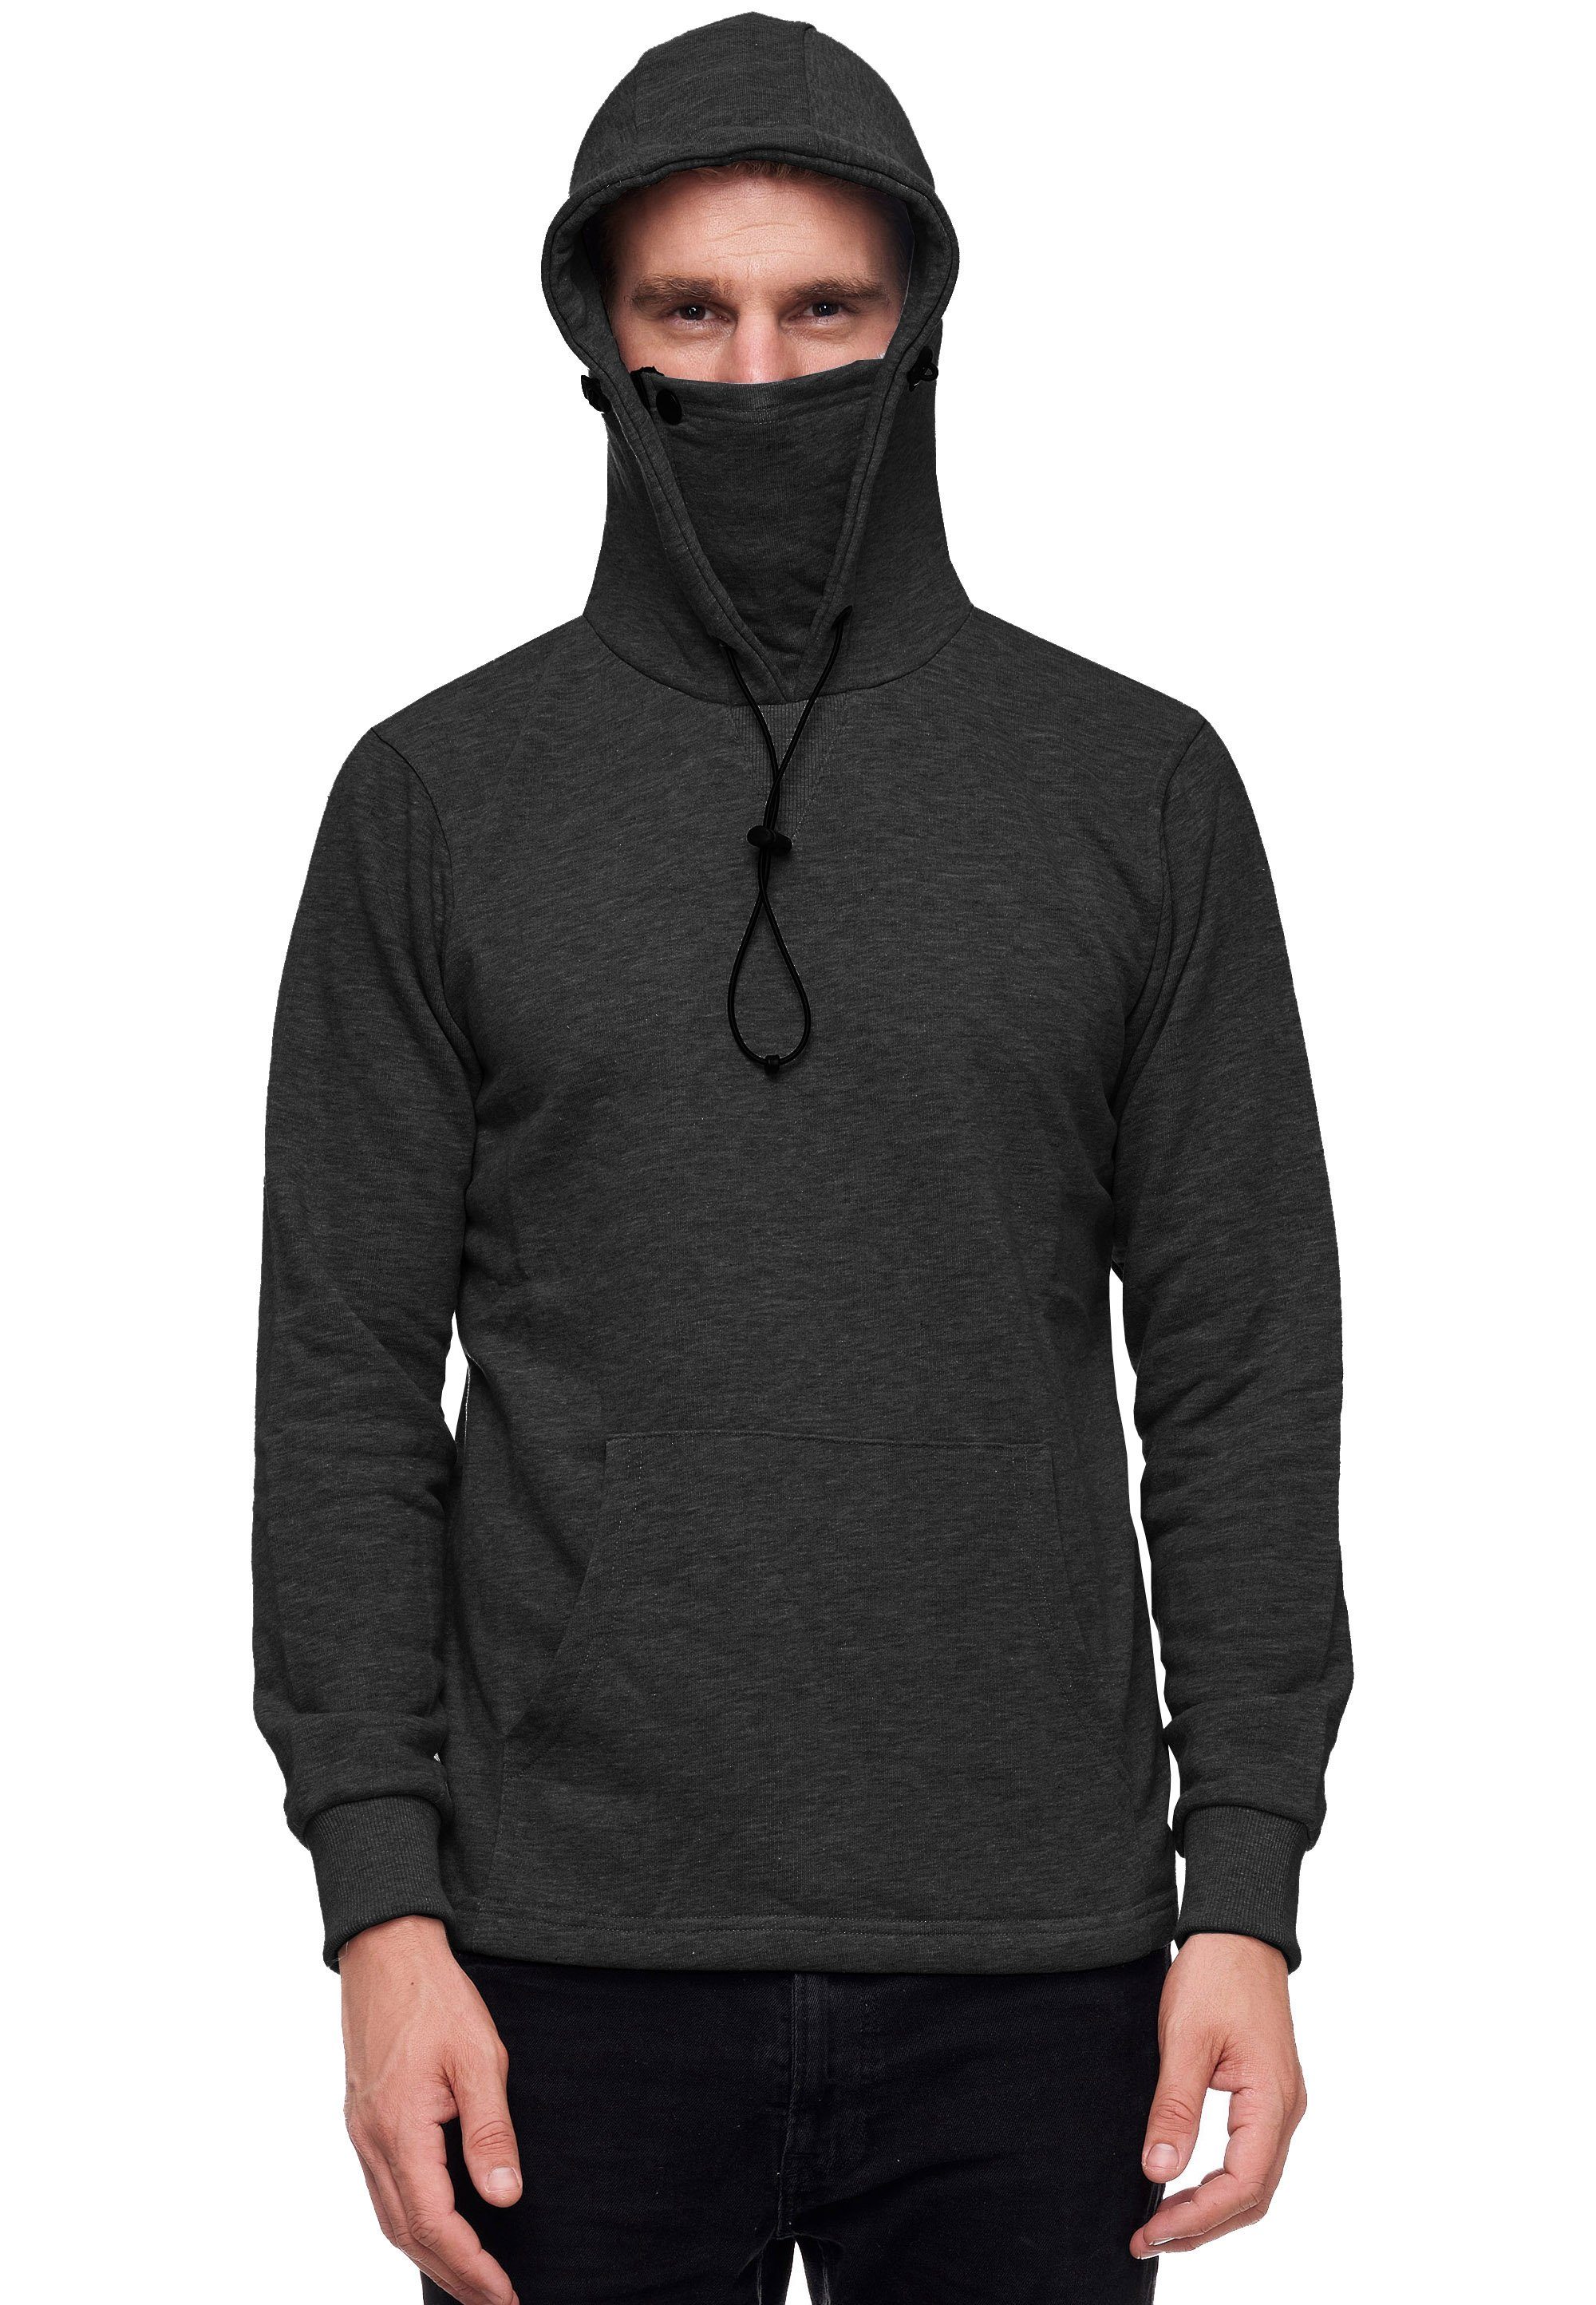 Rusty Neal Kapuzensweatshirt mit intregrierter Mund-Nasen-Bedeckung anthrazit | Sweatshirts